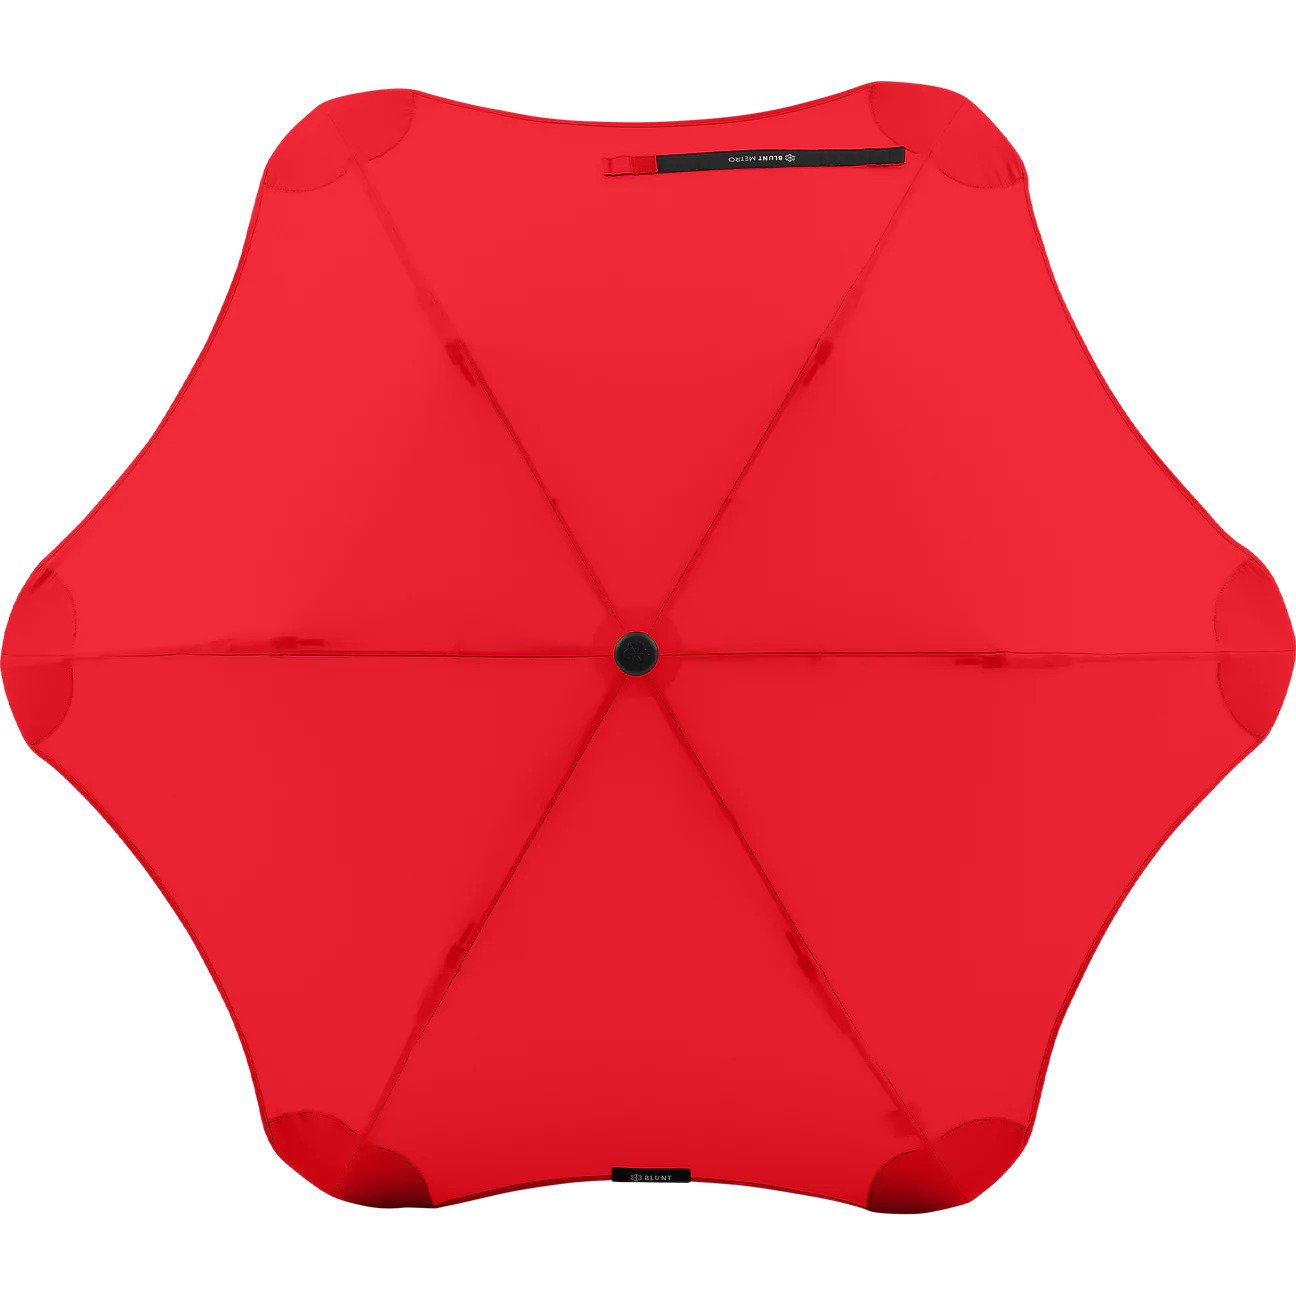 Blunt - Metro Umbrella - Red